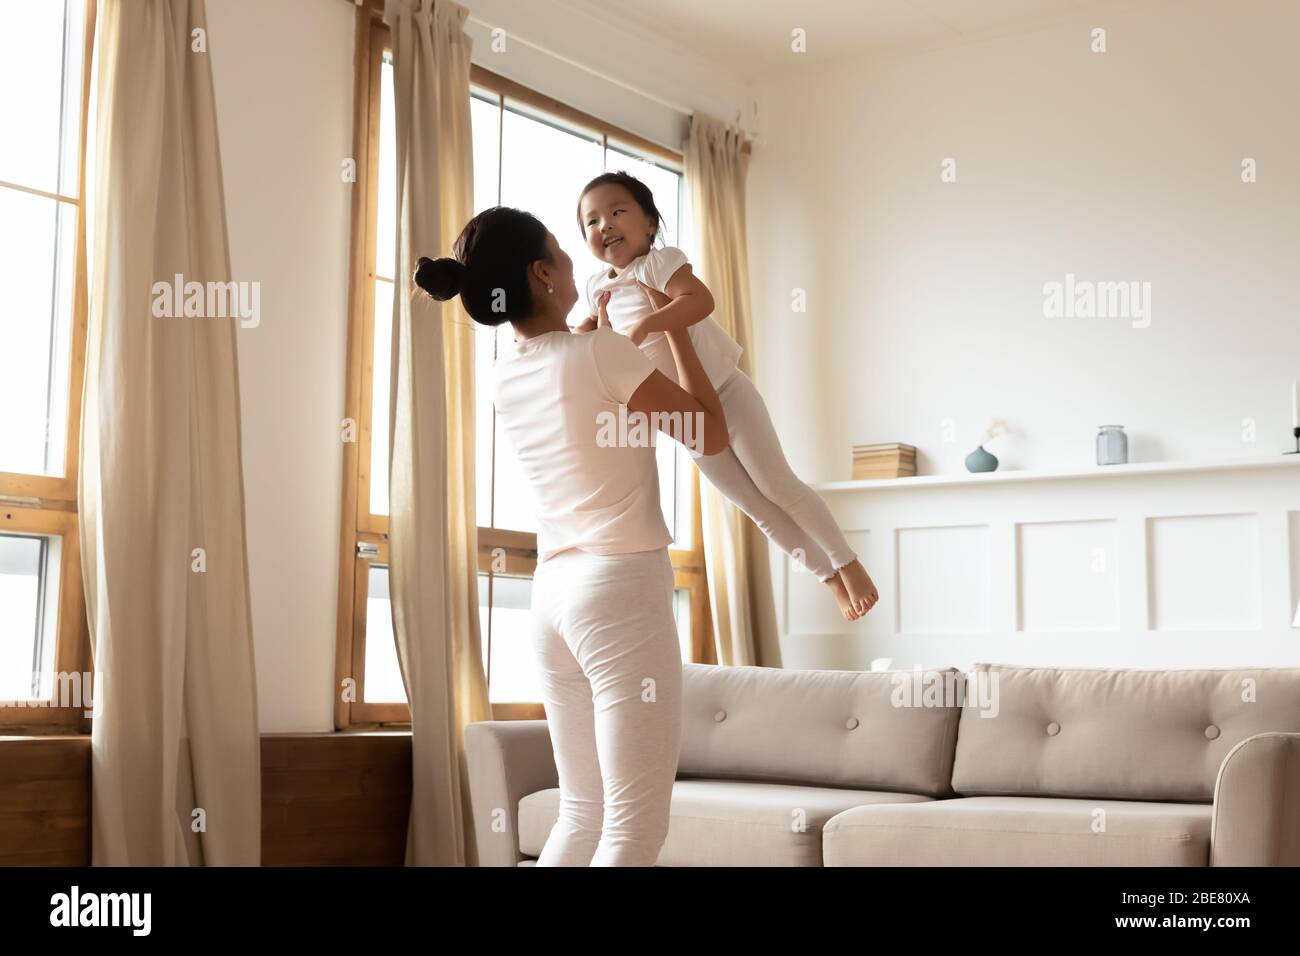 Maman joue avec une petite fille asiatique la soulevant et se balançant Banque D'Images